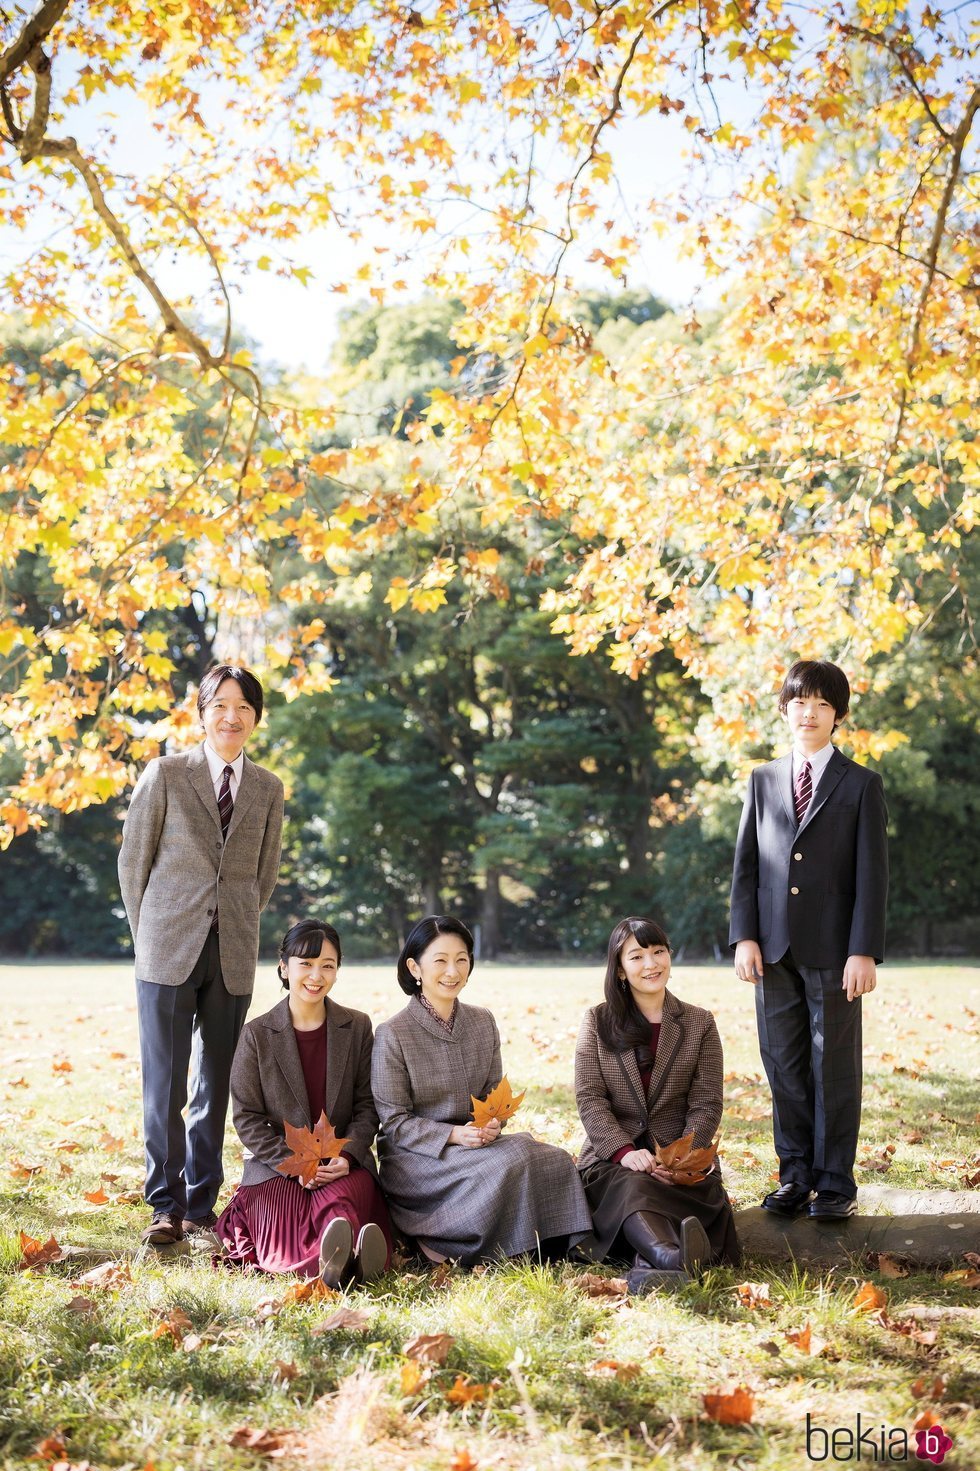 Akishino de Japón, Kako de Japón, Kiko de Japón, Mako de Japón e Hisahito de Japón